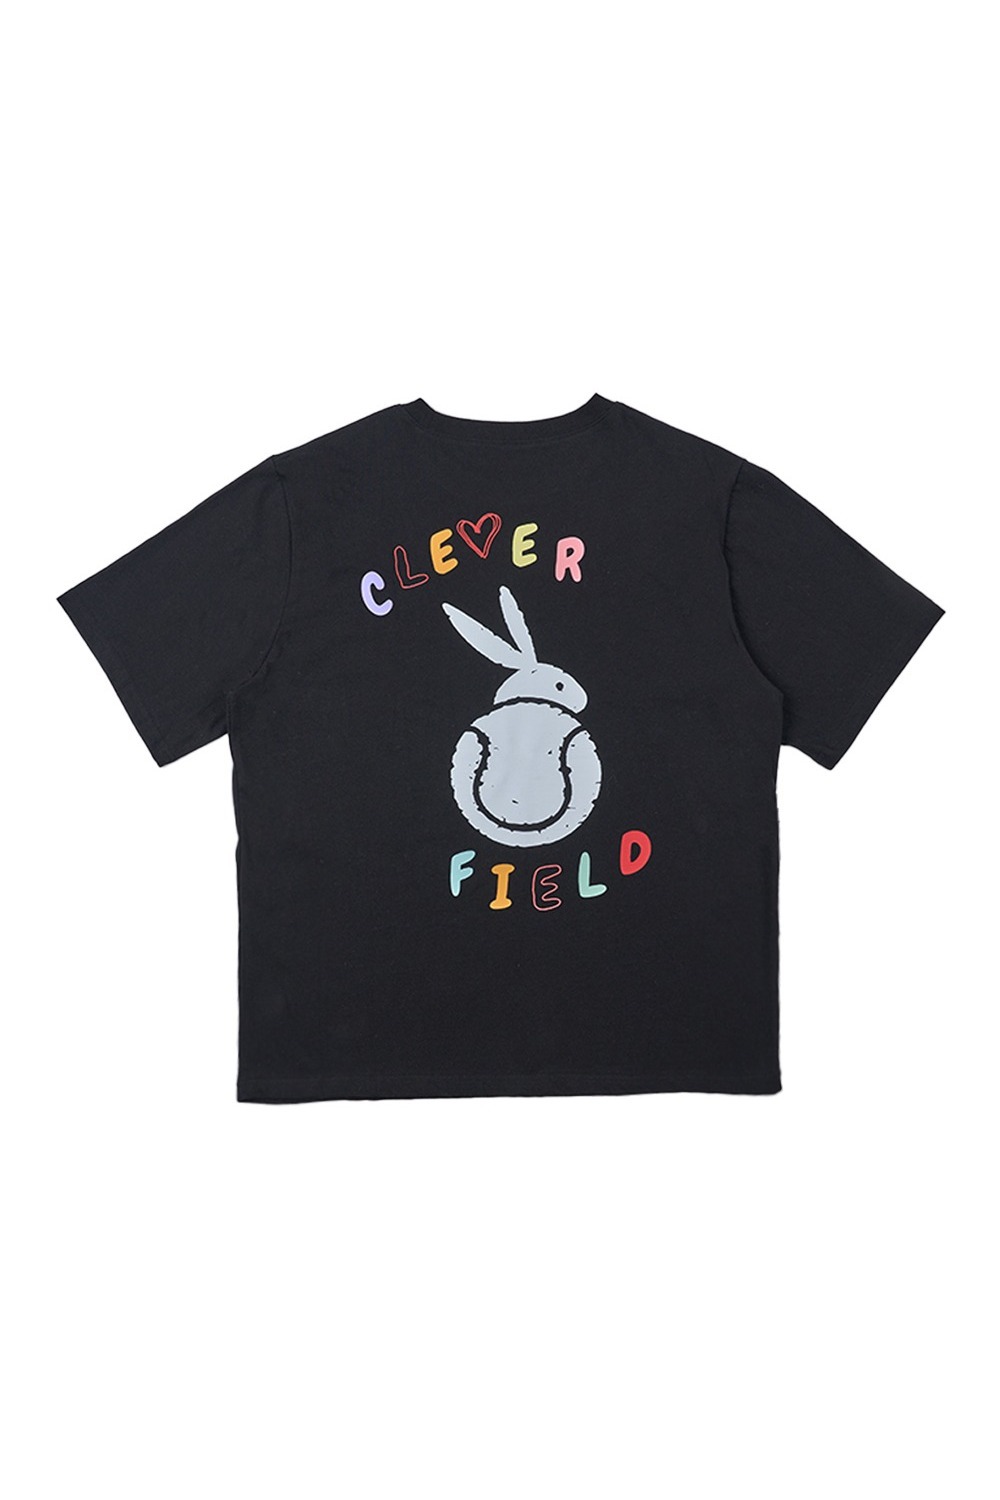 Overfit Color Graphic Line T-Shirt (Black) RICHEZ